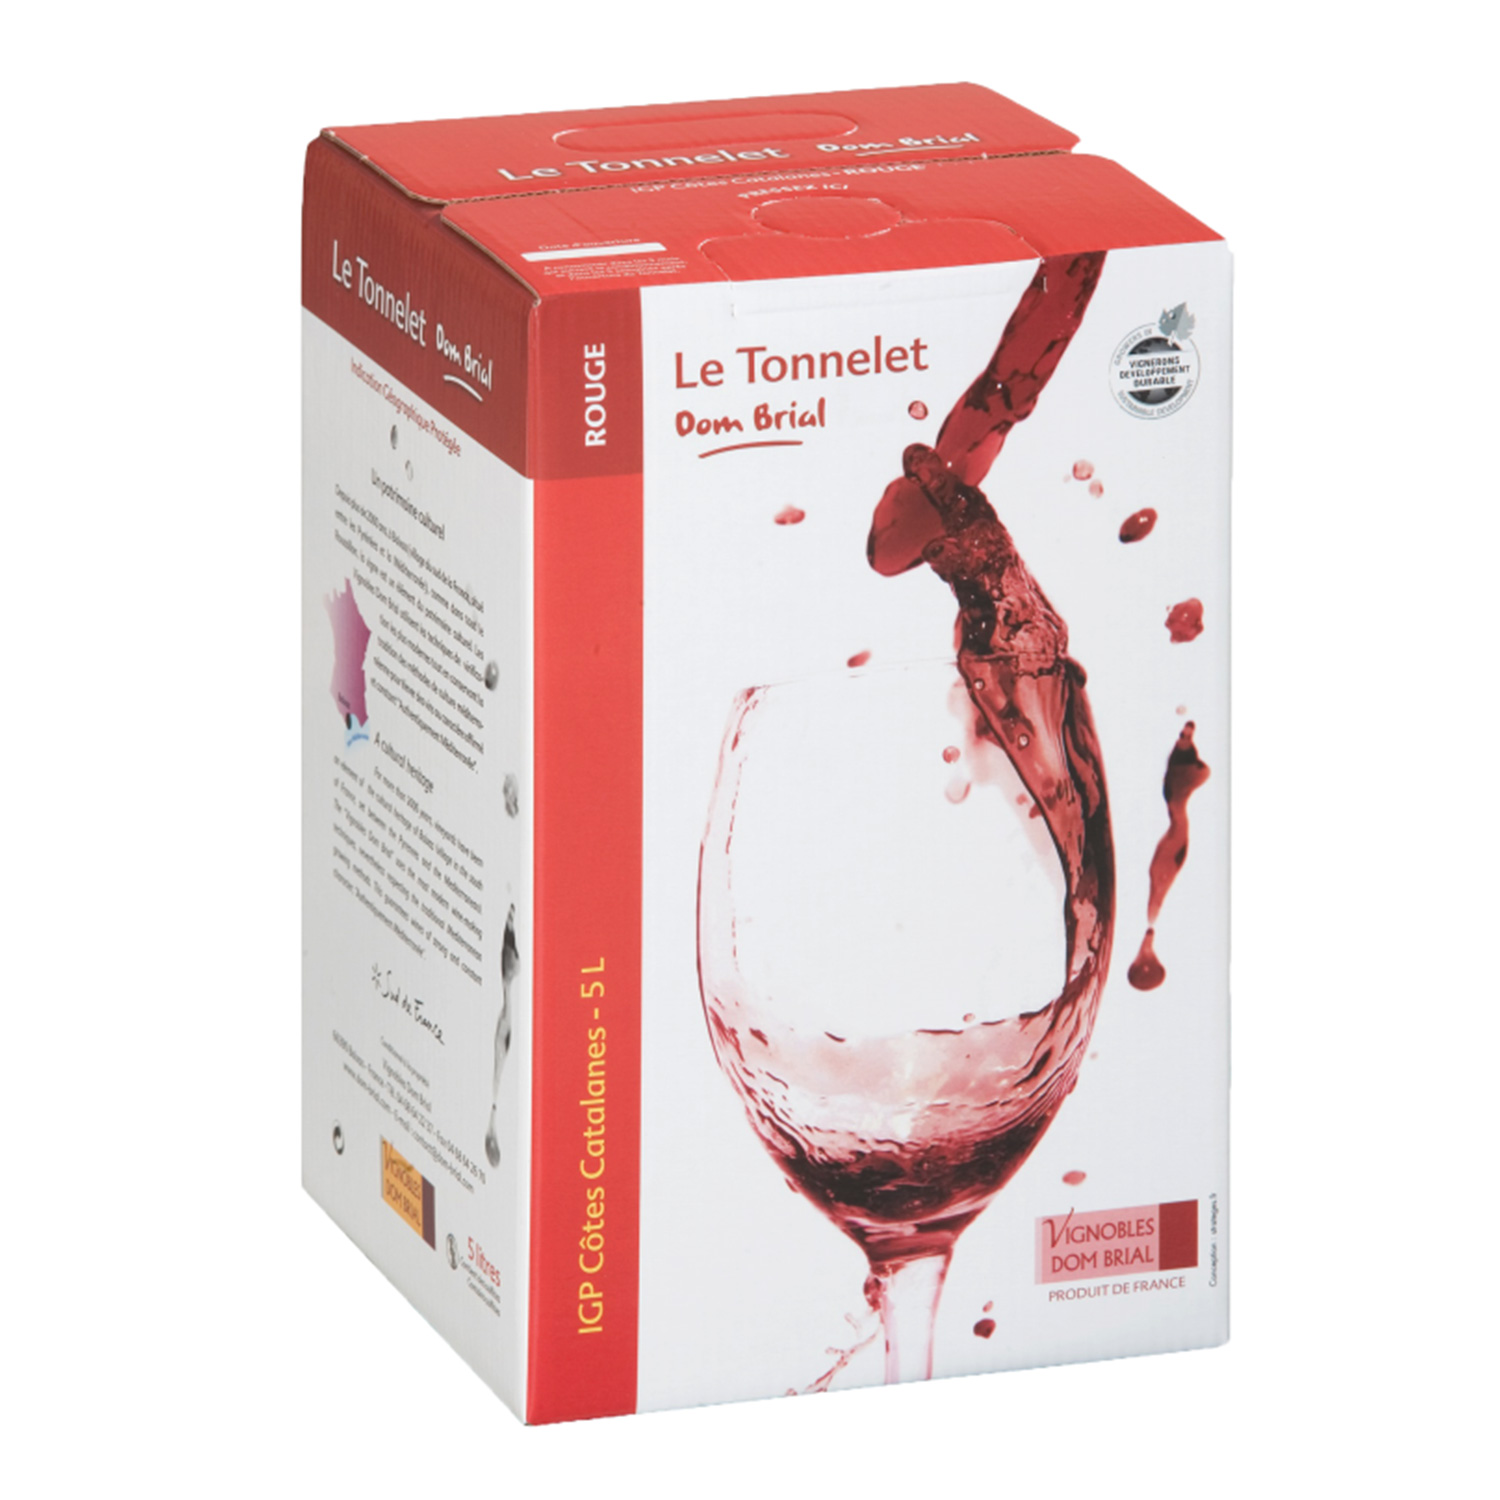 IGP Côtes Catalanes - Cubi de qualité - Le Tonnelet - 5L - Domaine Dom Brial - ROUGE